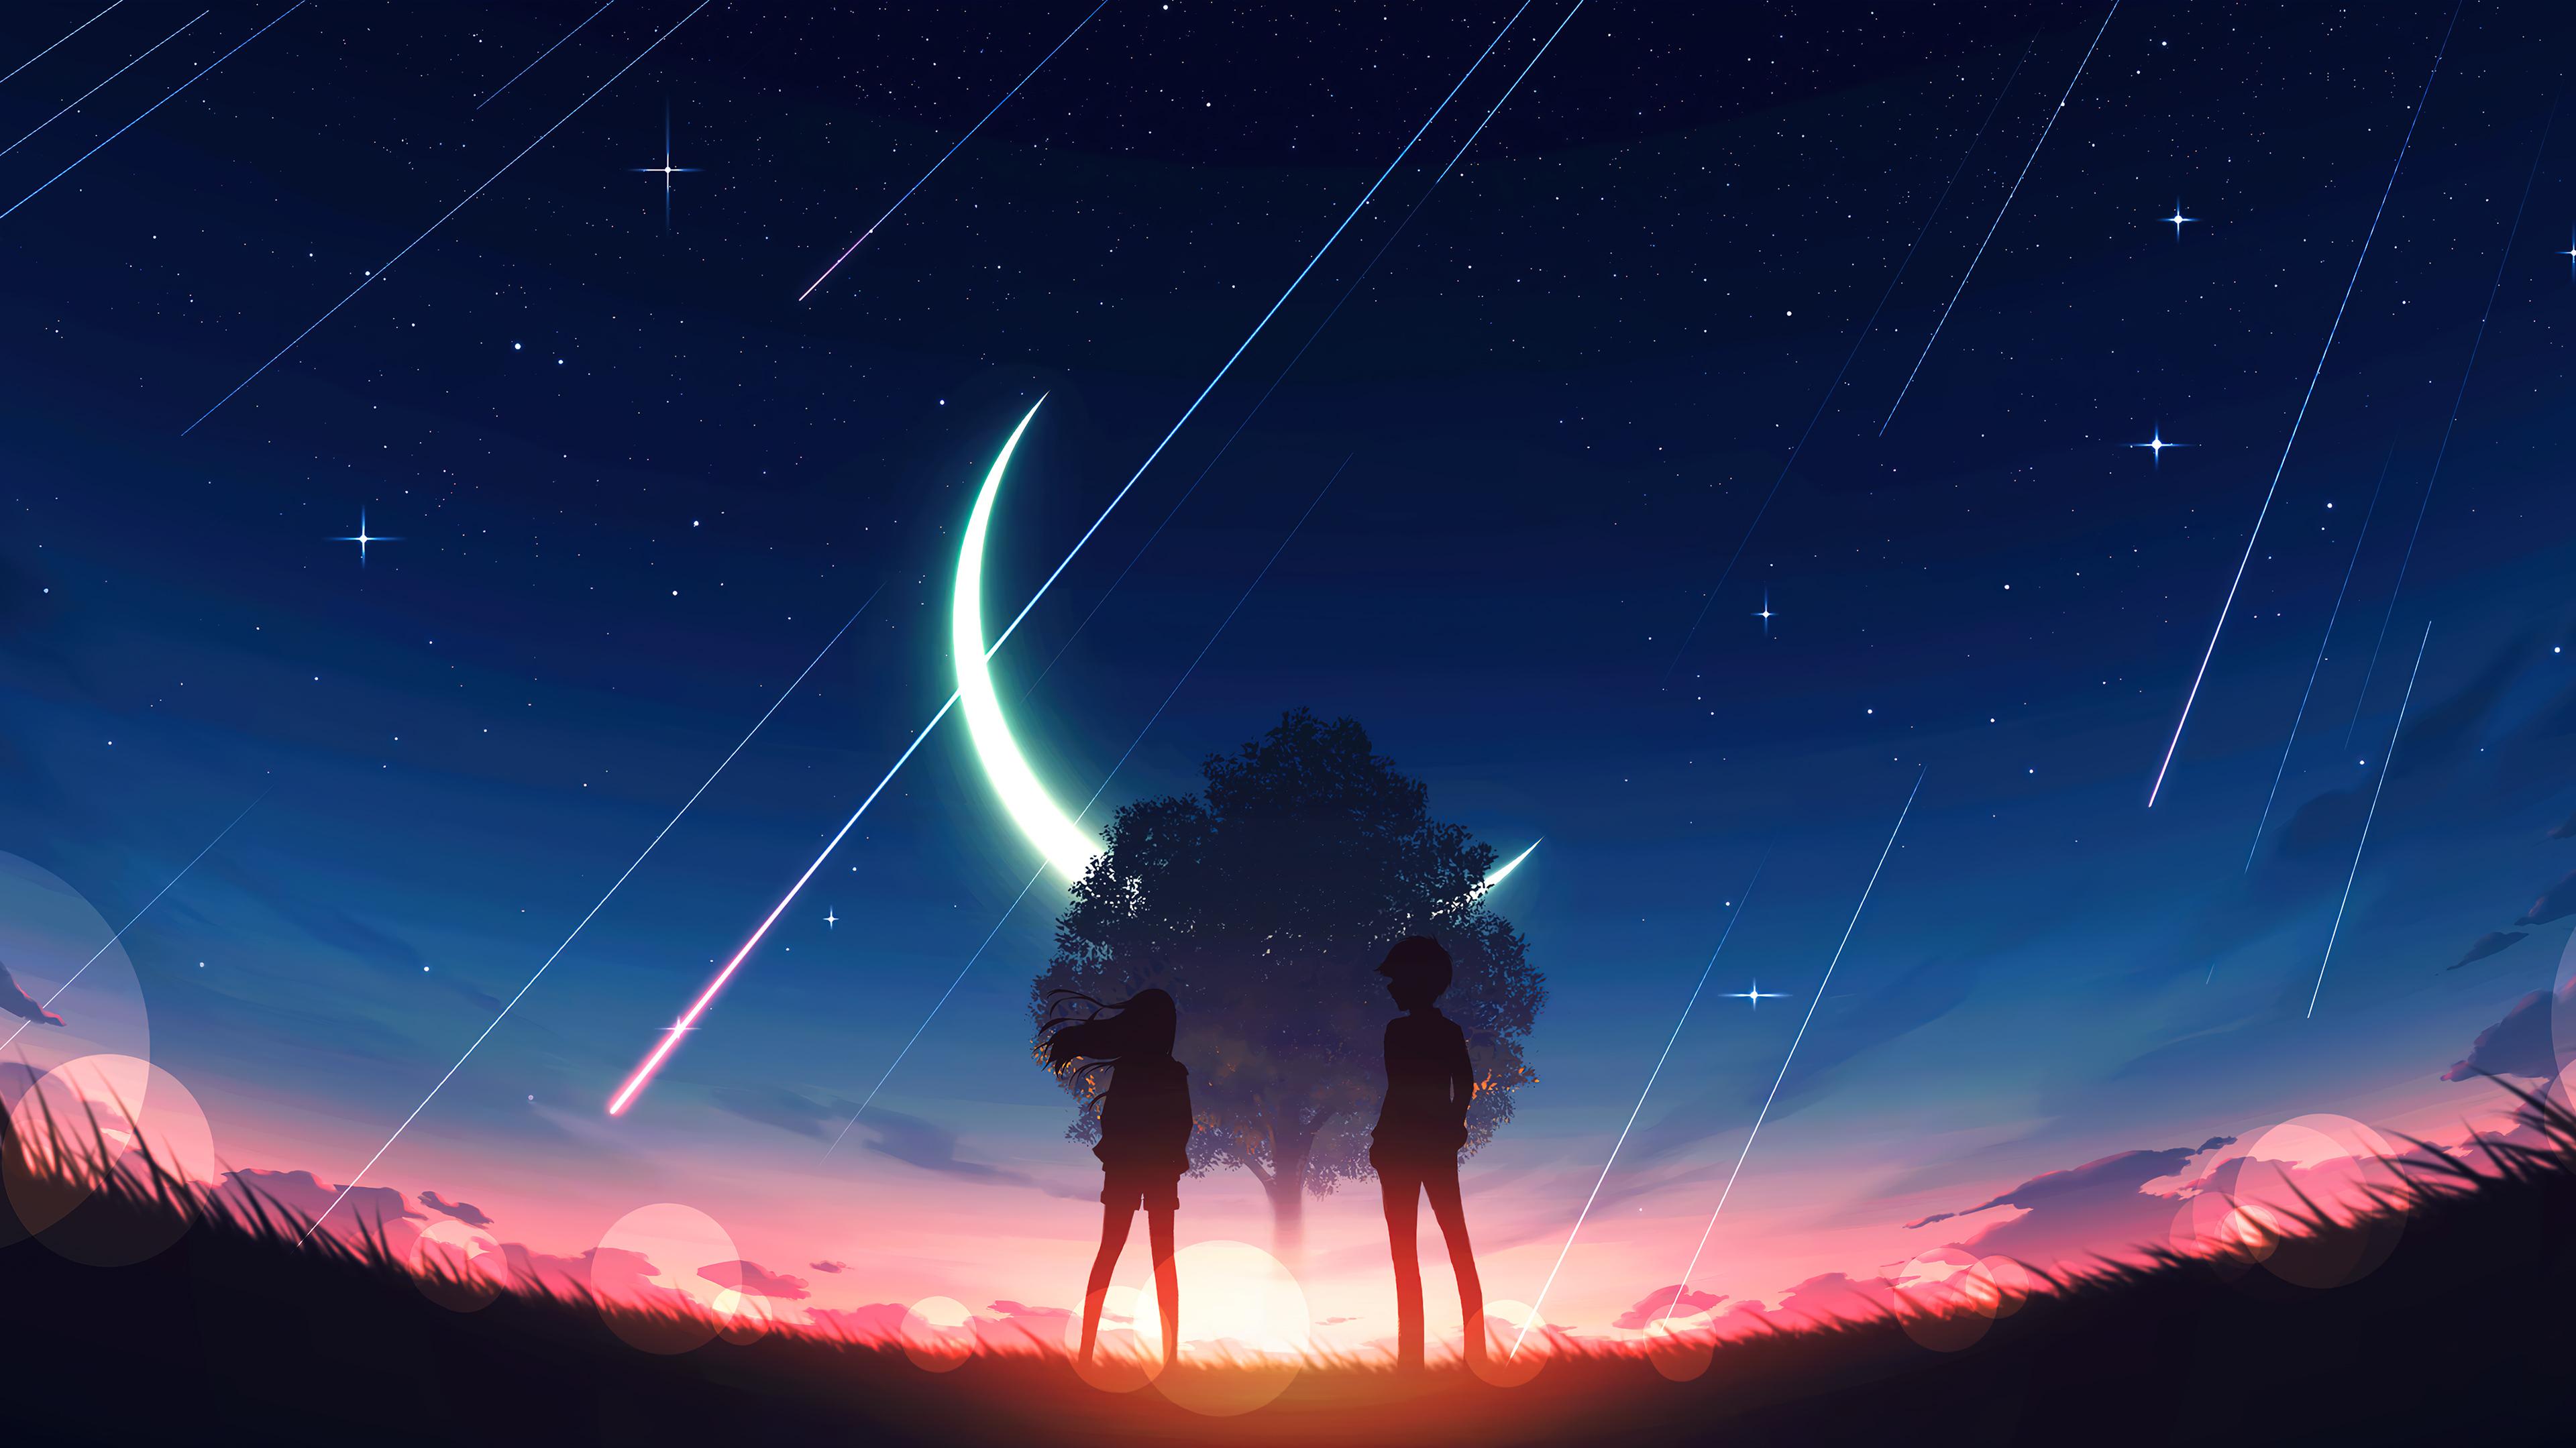 Anime Sunrise Scenery Horizon Night Sky 4K Phone iPhone Wallpaper